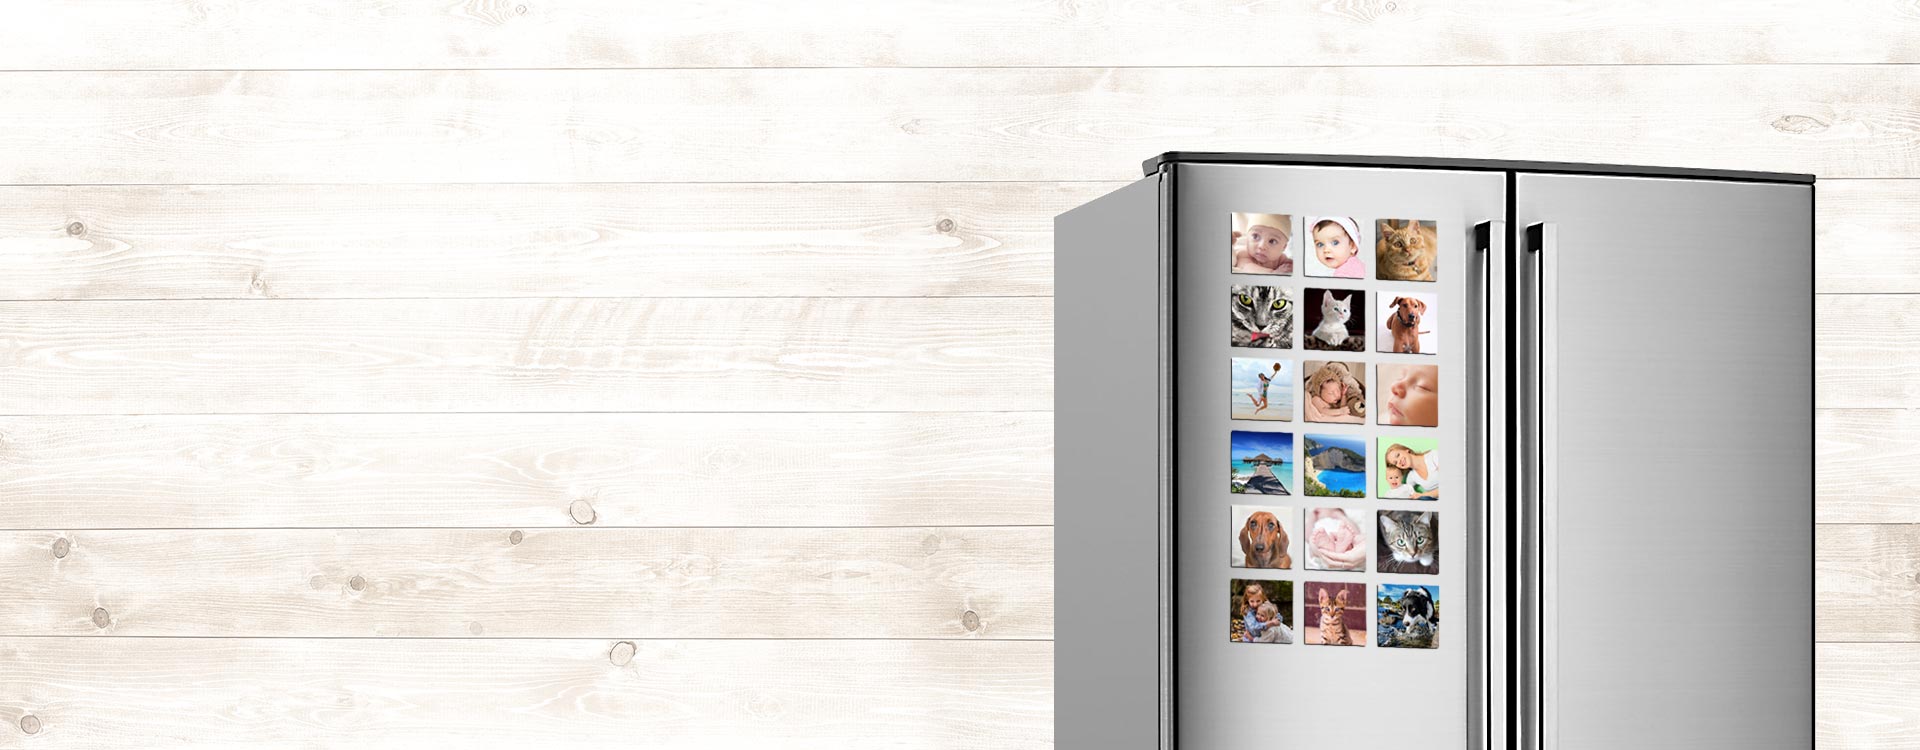 Imanes con foto para refrigeradores